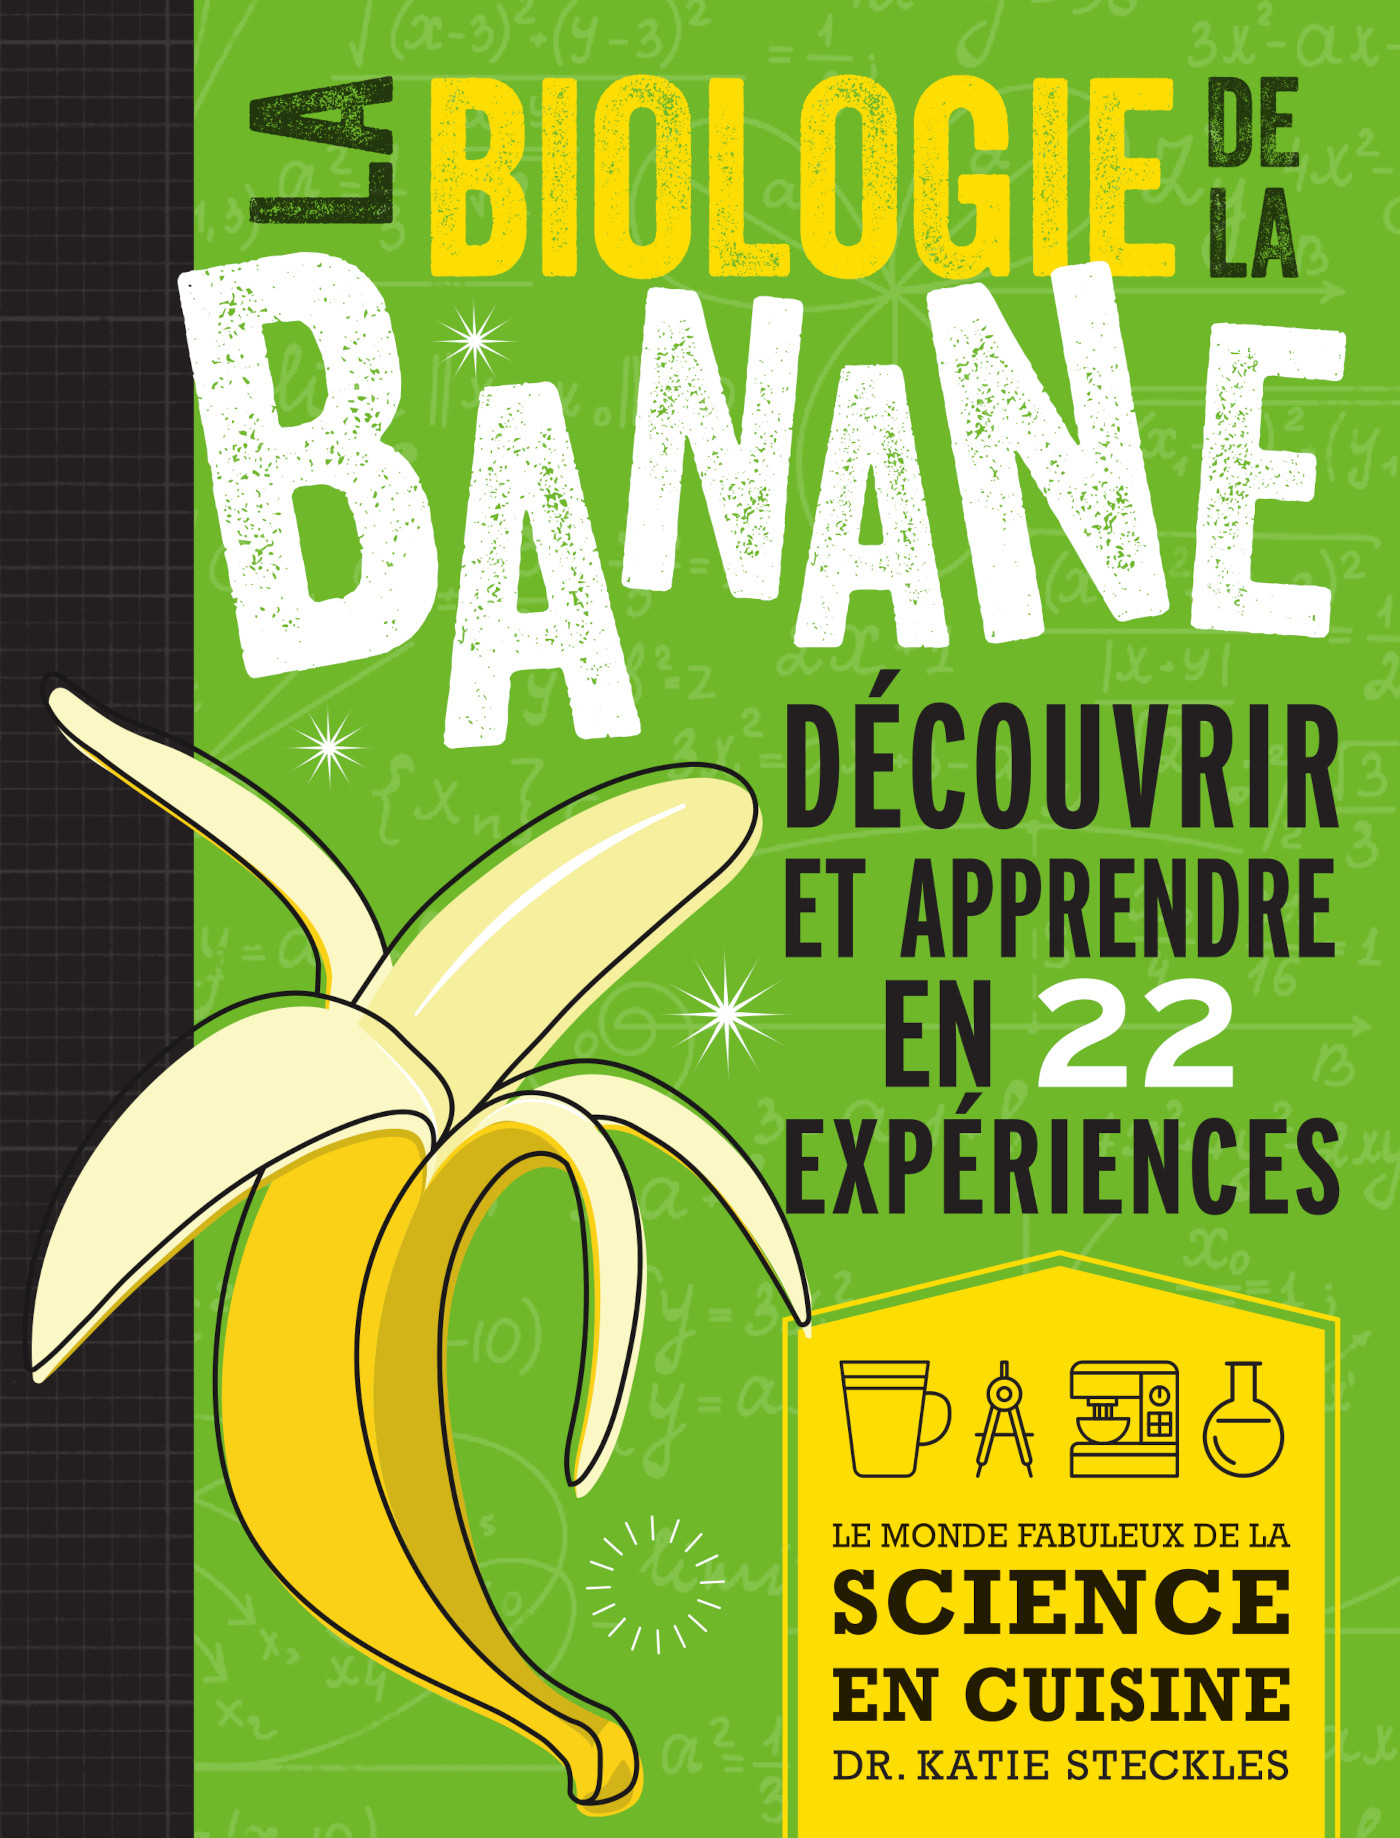 Bananes - Produits - Cuisine française